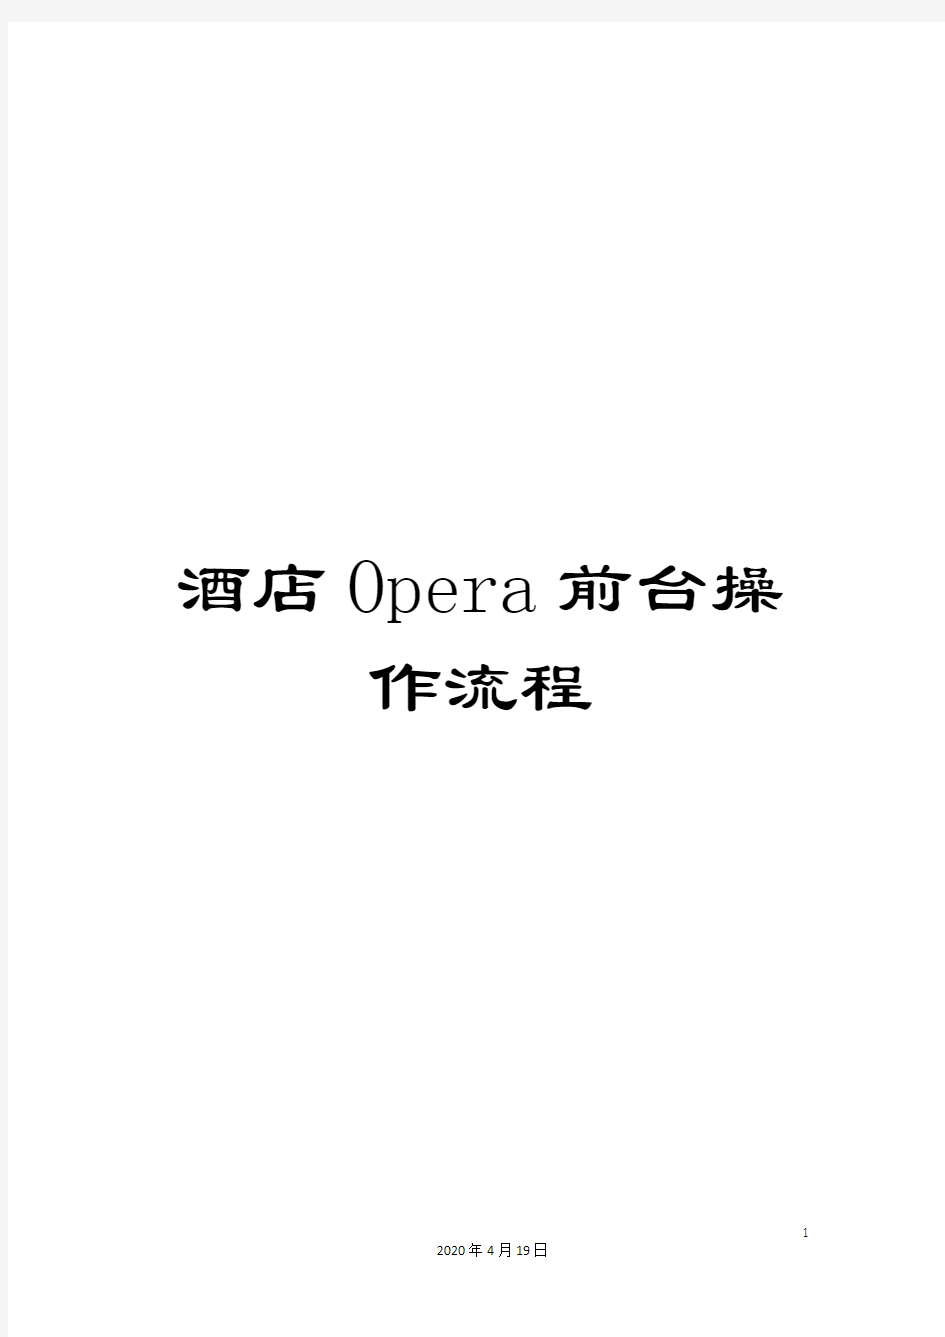 酒店Opera前台操作流程